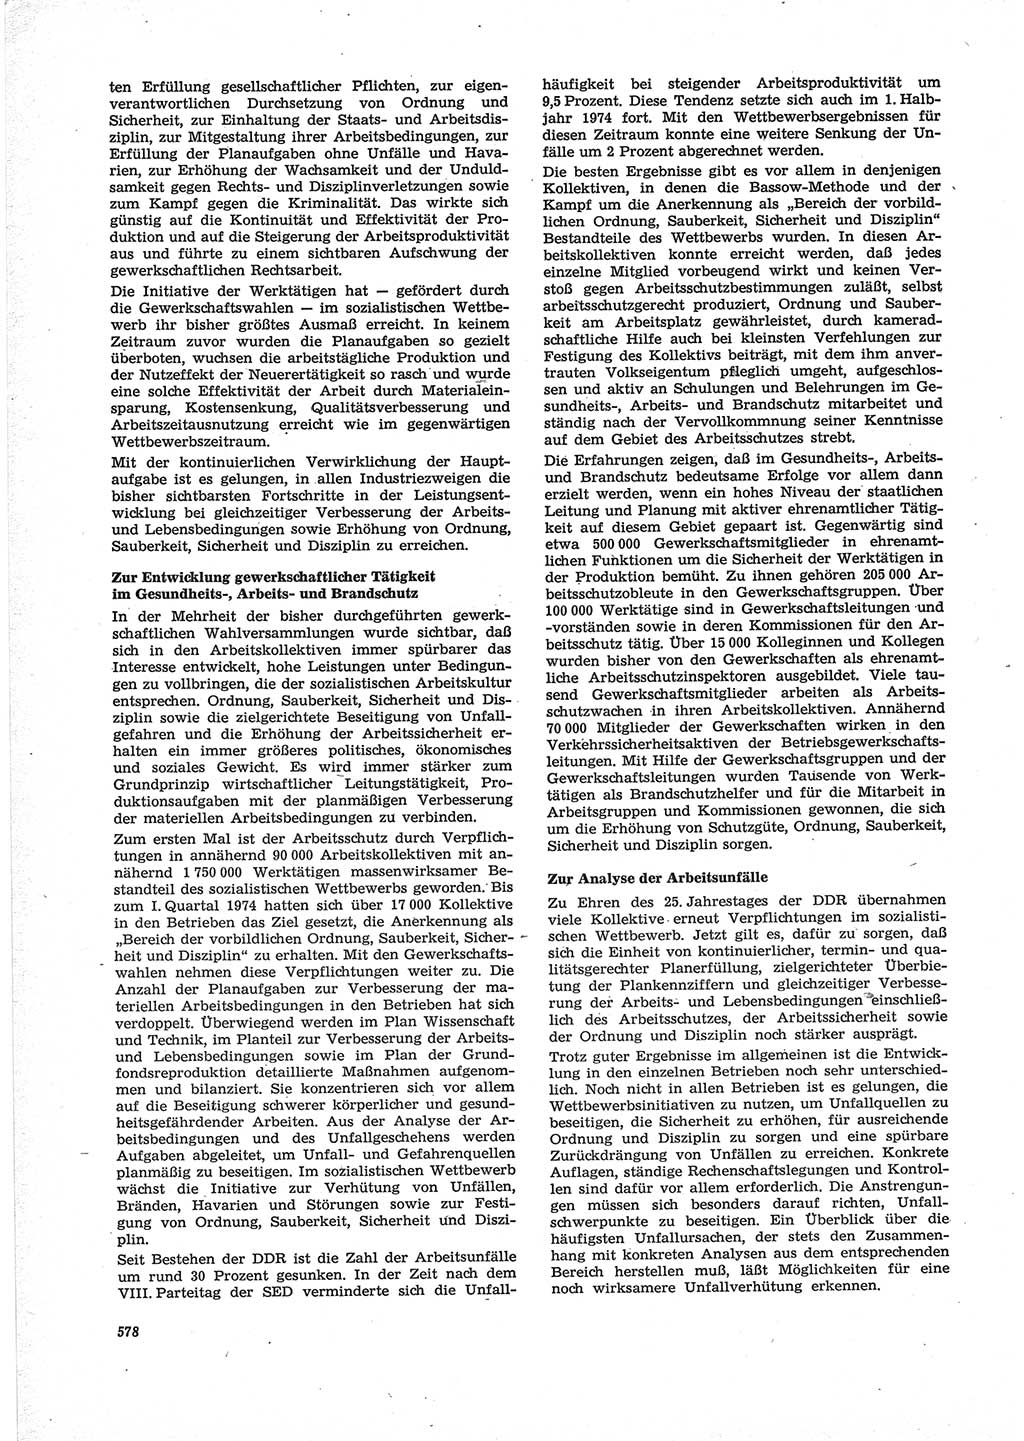 Neue Justiz (NJ), Zeitschrift für Recht und Rechtswissenschaft [Deutsche Demokratische Republik (DDR)], 28. Jahrgang 1974, Seite 578 (NJ DDR 1974, S. 578)